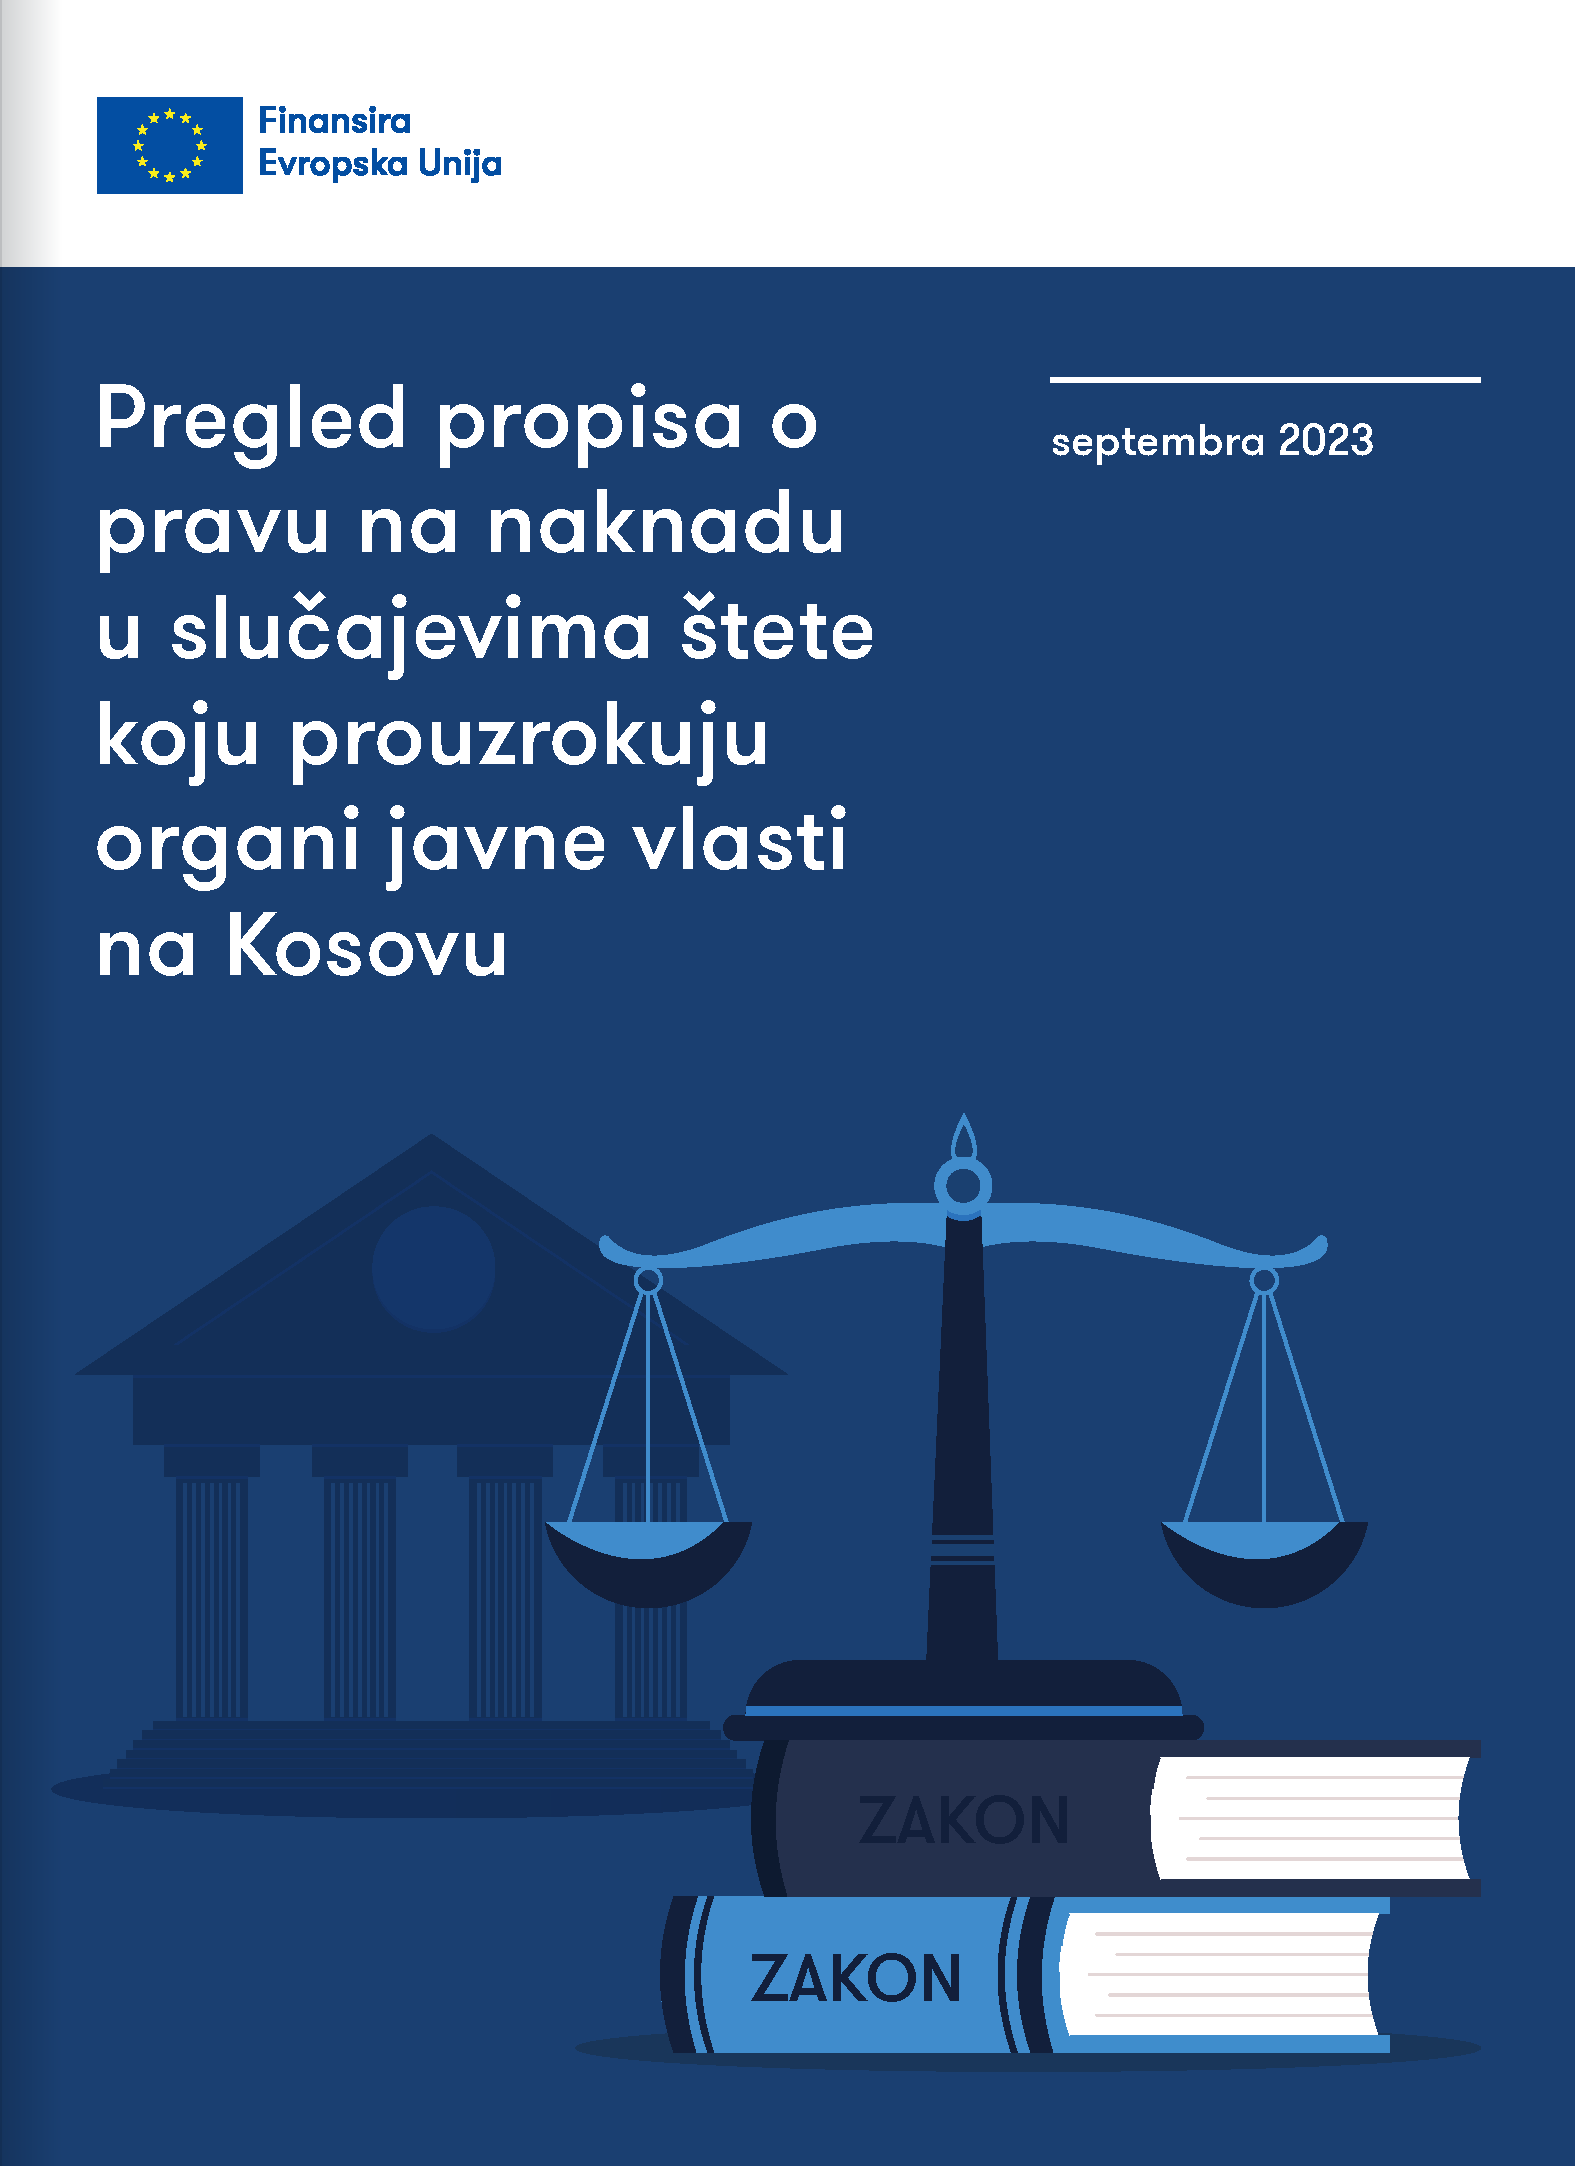 Pregled propisa o pravu na naknadu u slučajevima štete koju prouzrokuju organi javne vlasti na Kosovu